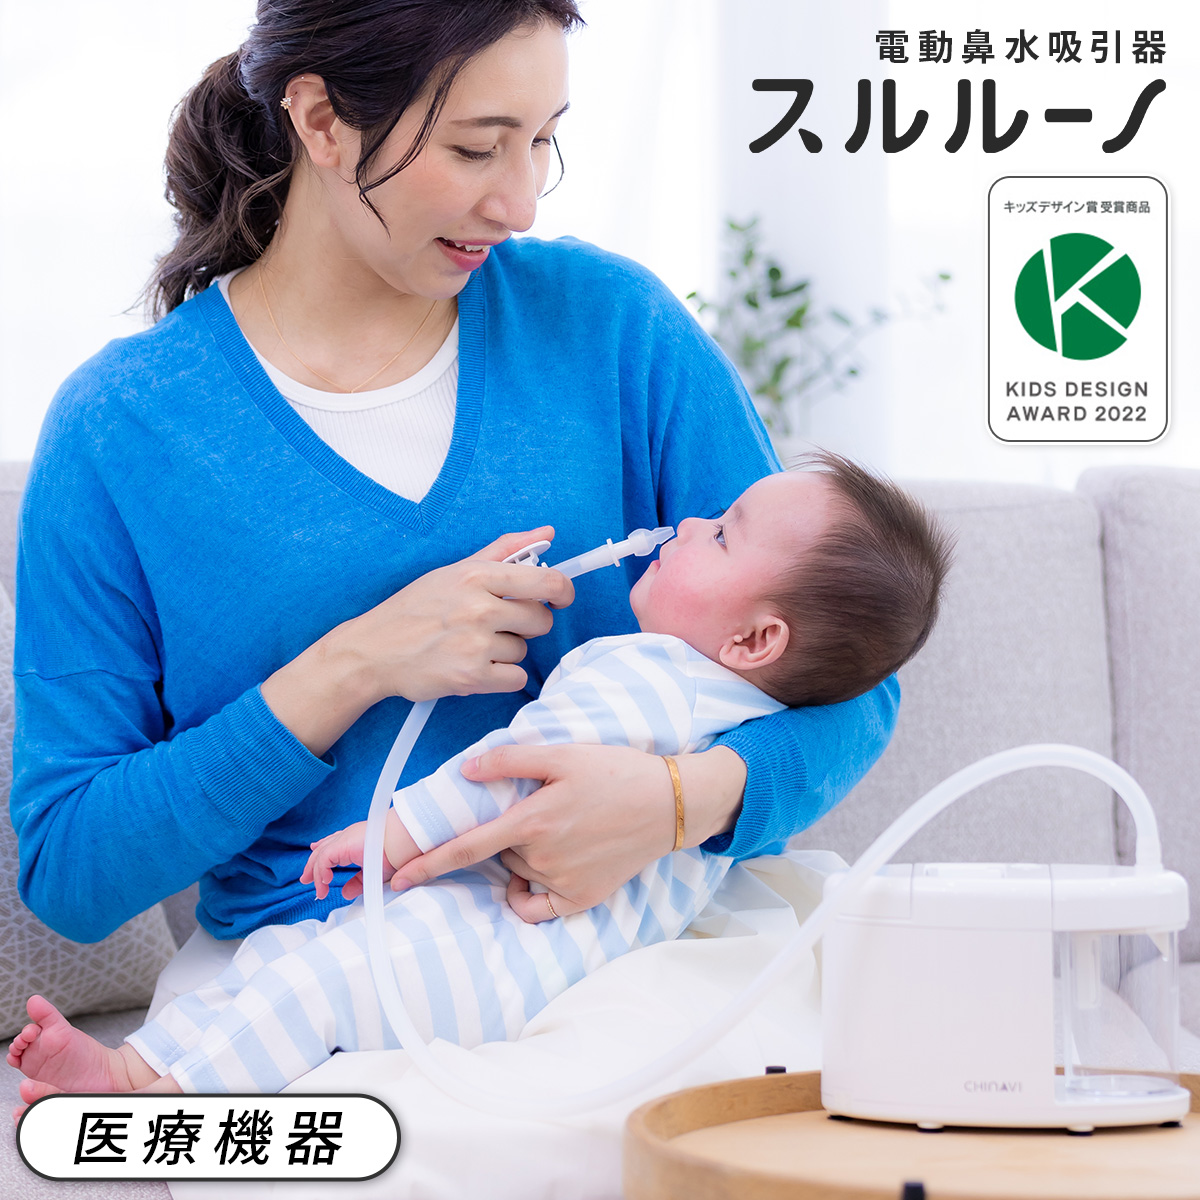 鼻吸い機 電動 鼻水吸引器 医療用 ベビー 赤ちゃん 新生児 乳児 子供 子ども こども スルルーノ 鼻水吸引 鼻吸い器 静音 軽量 電動鼻水吸引器